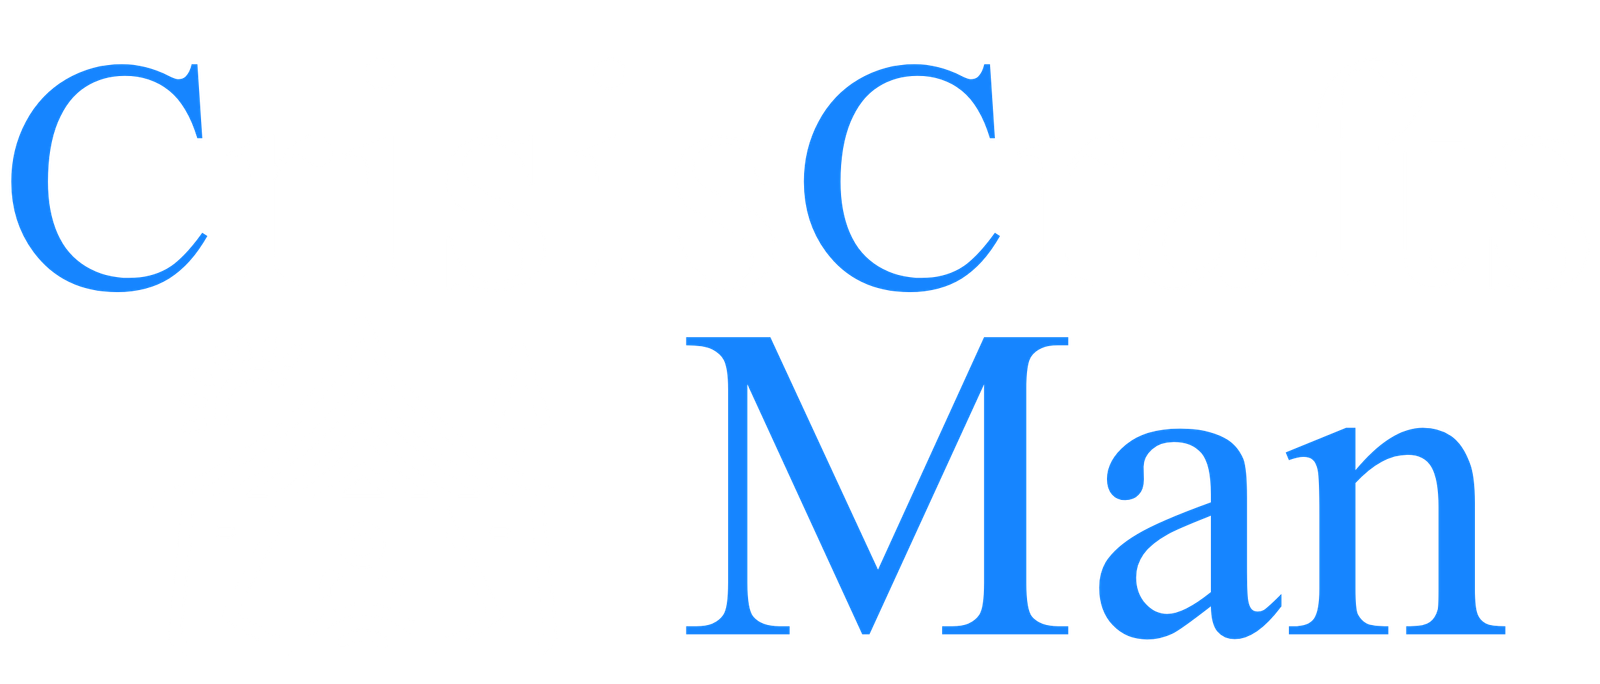 Crisis Crafts Man